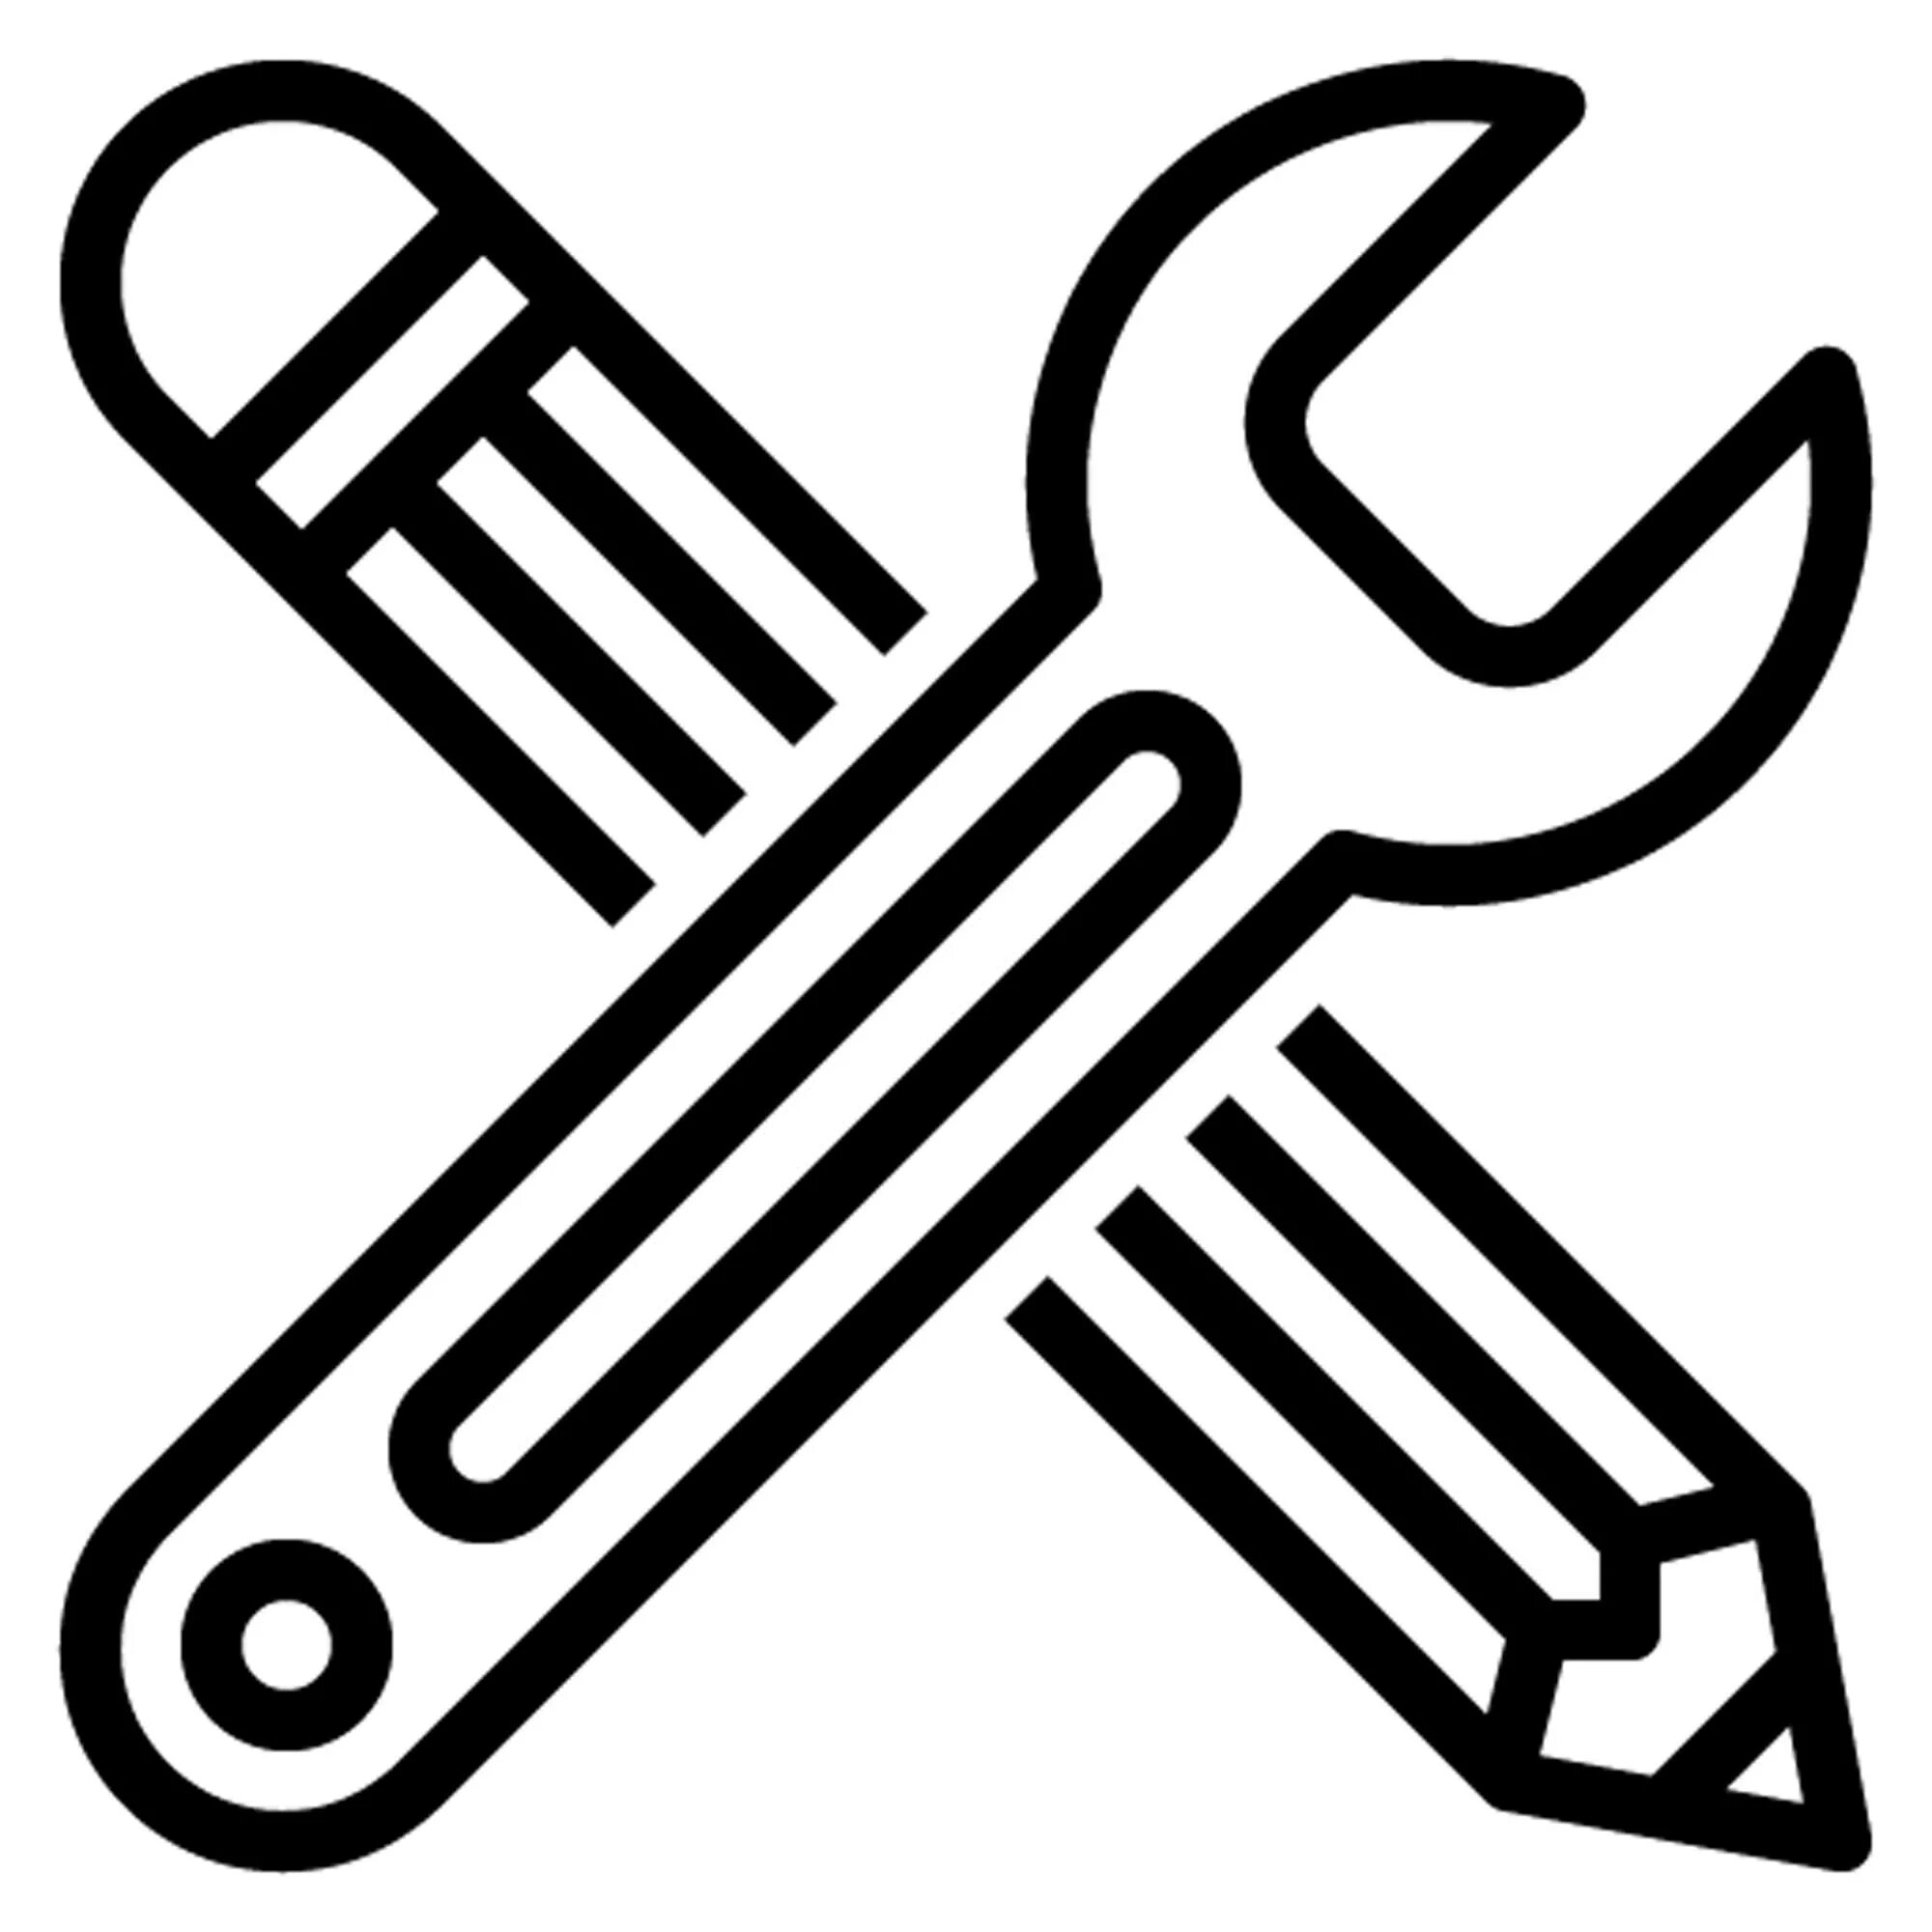 Icon tools. Значок инструменты. Инструментарий иконка. Пиктограмма инструменты монтажные. Профессиональные инструменты иконка.